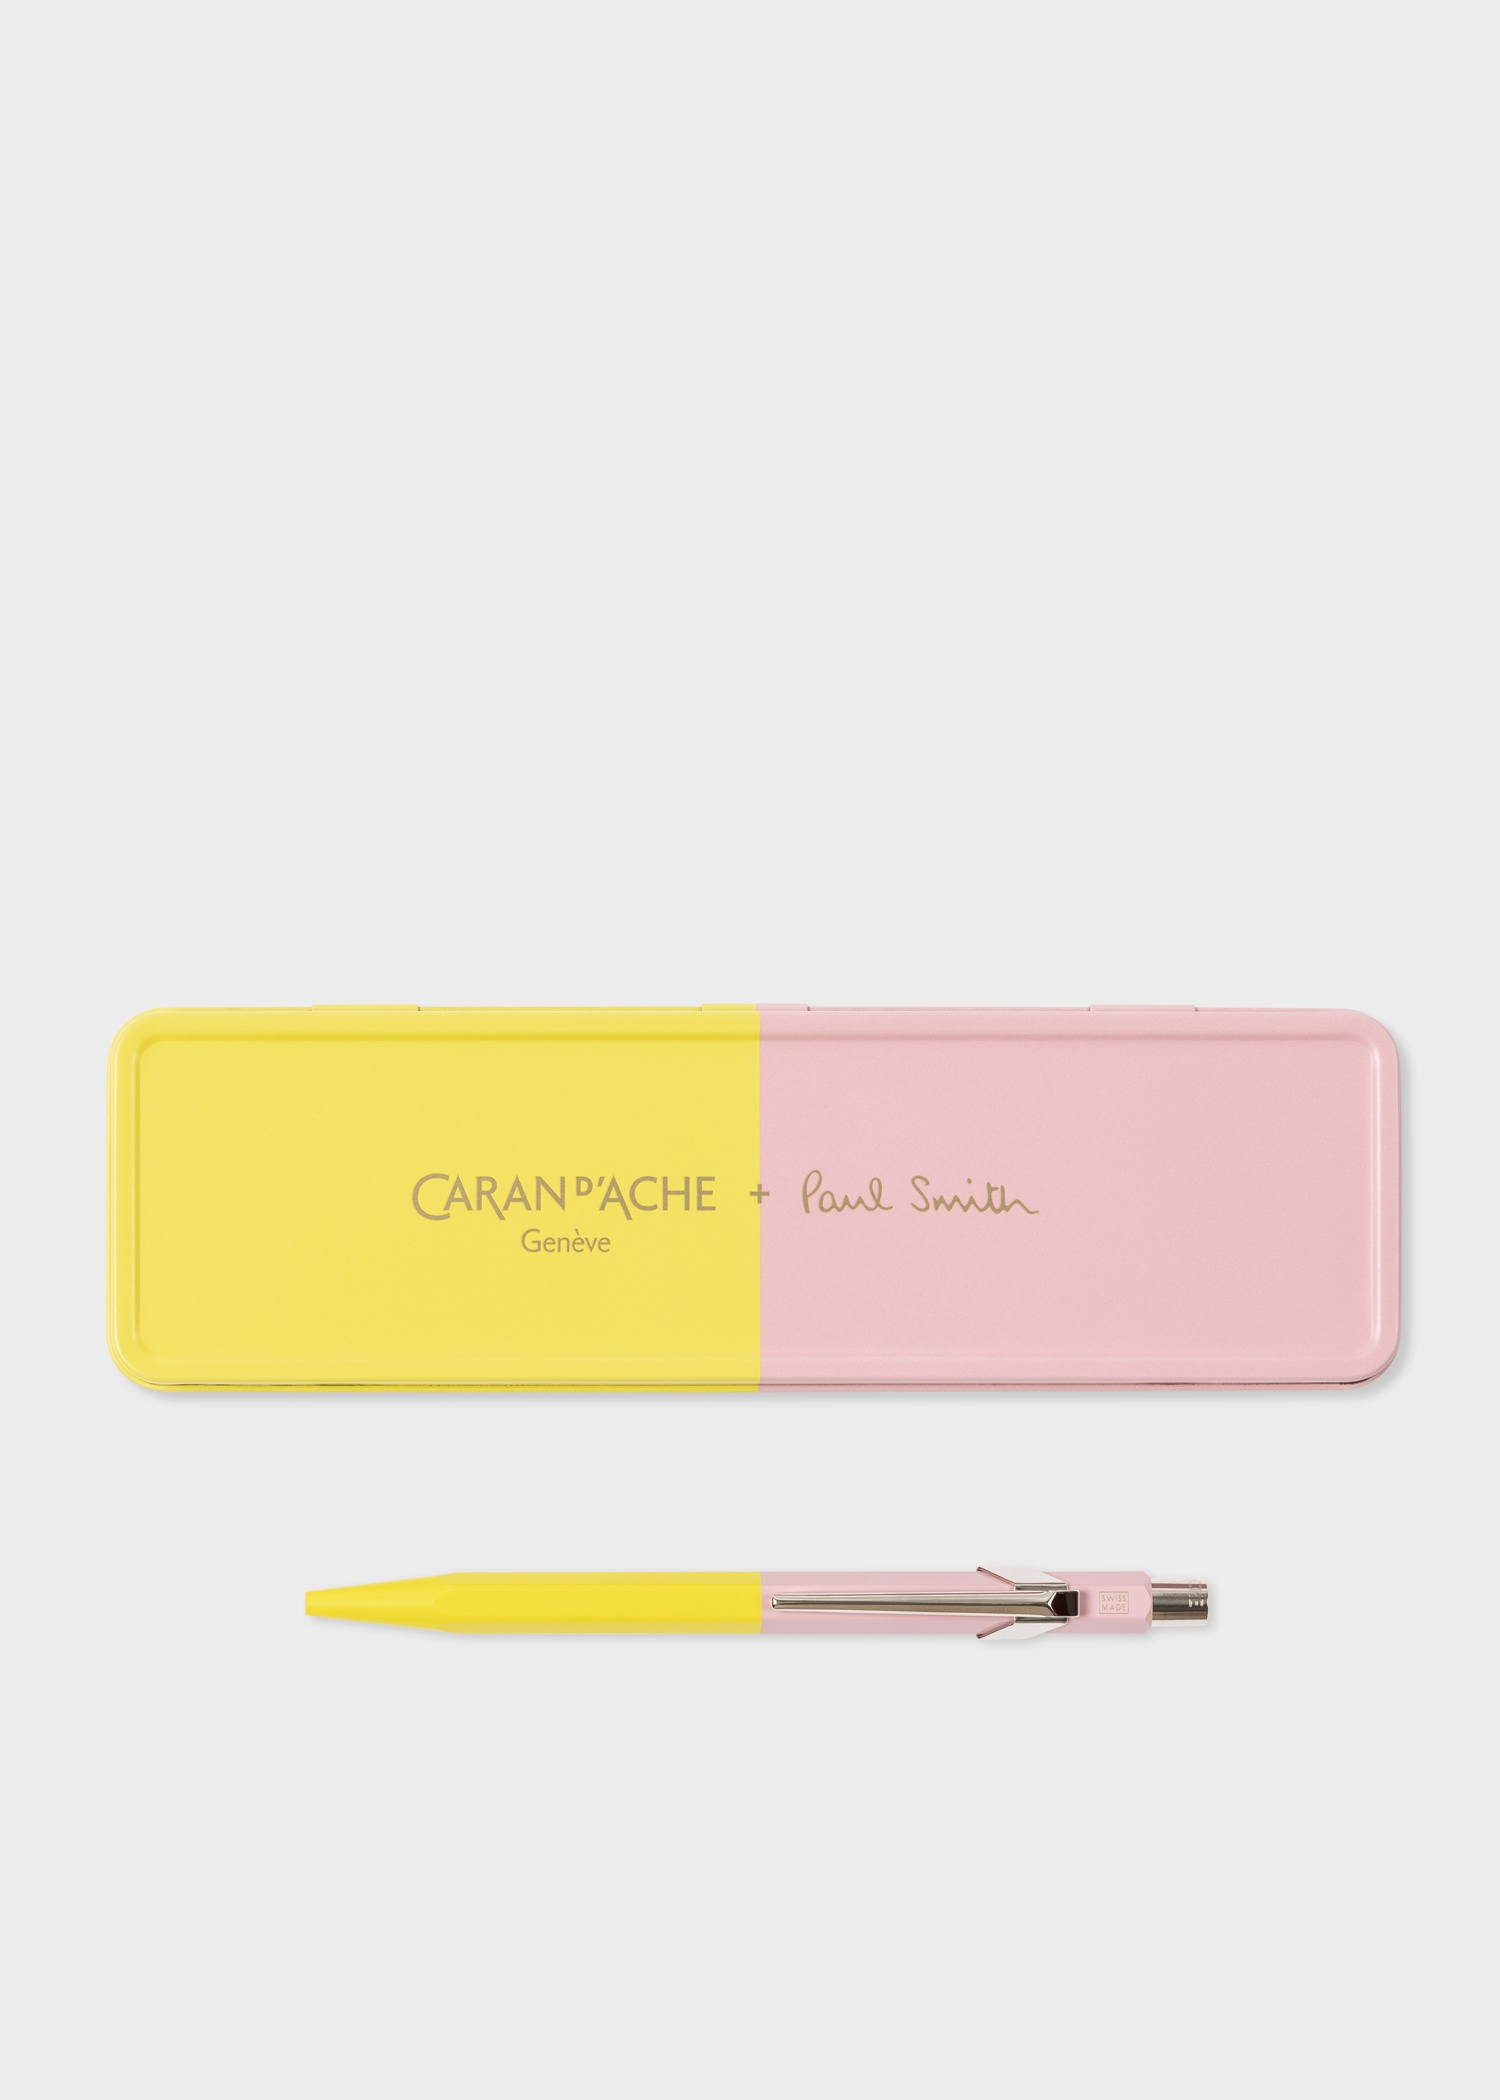 Caran d'Ache + Paul Smith - 849 Yellow & Pink Ballpoint Pen - 1